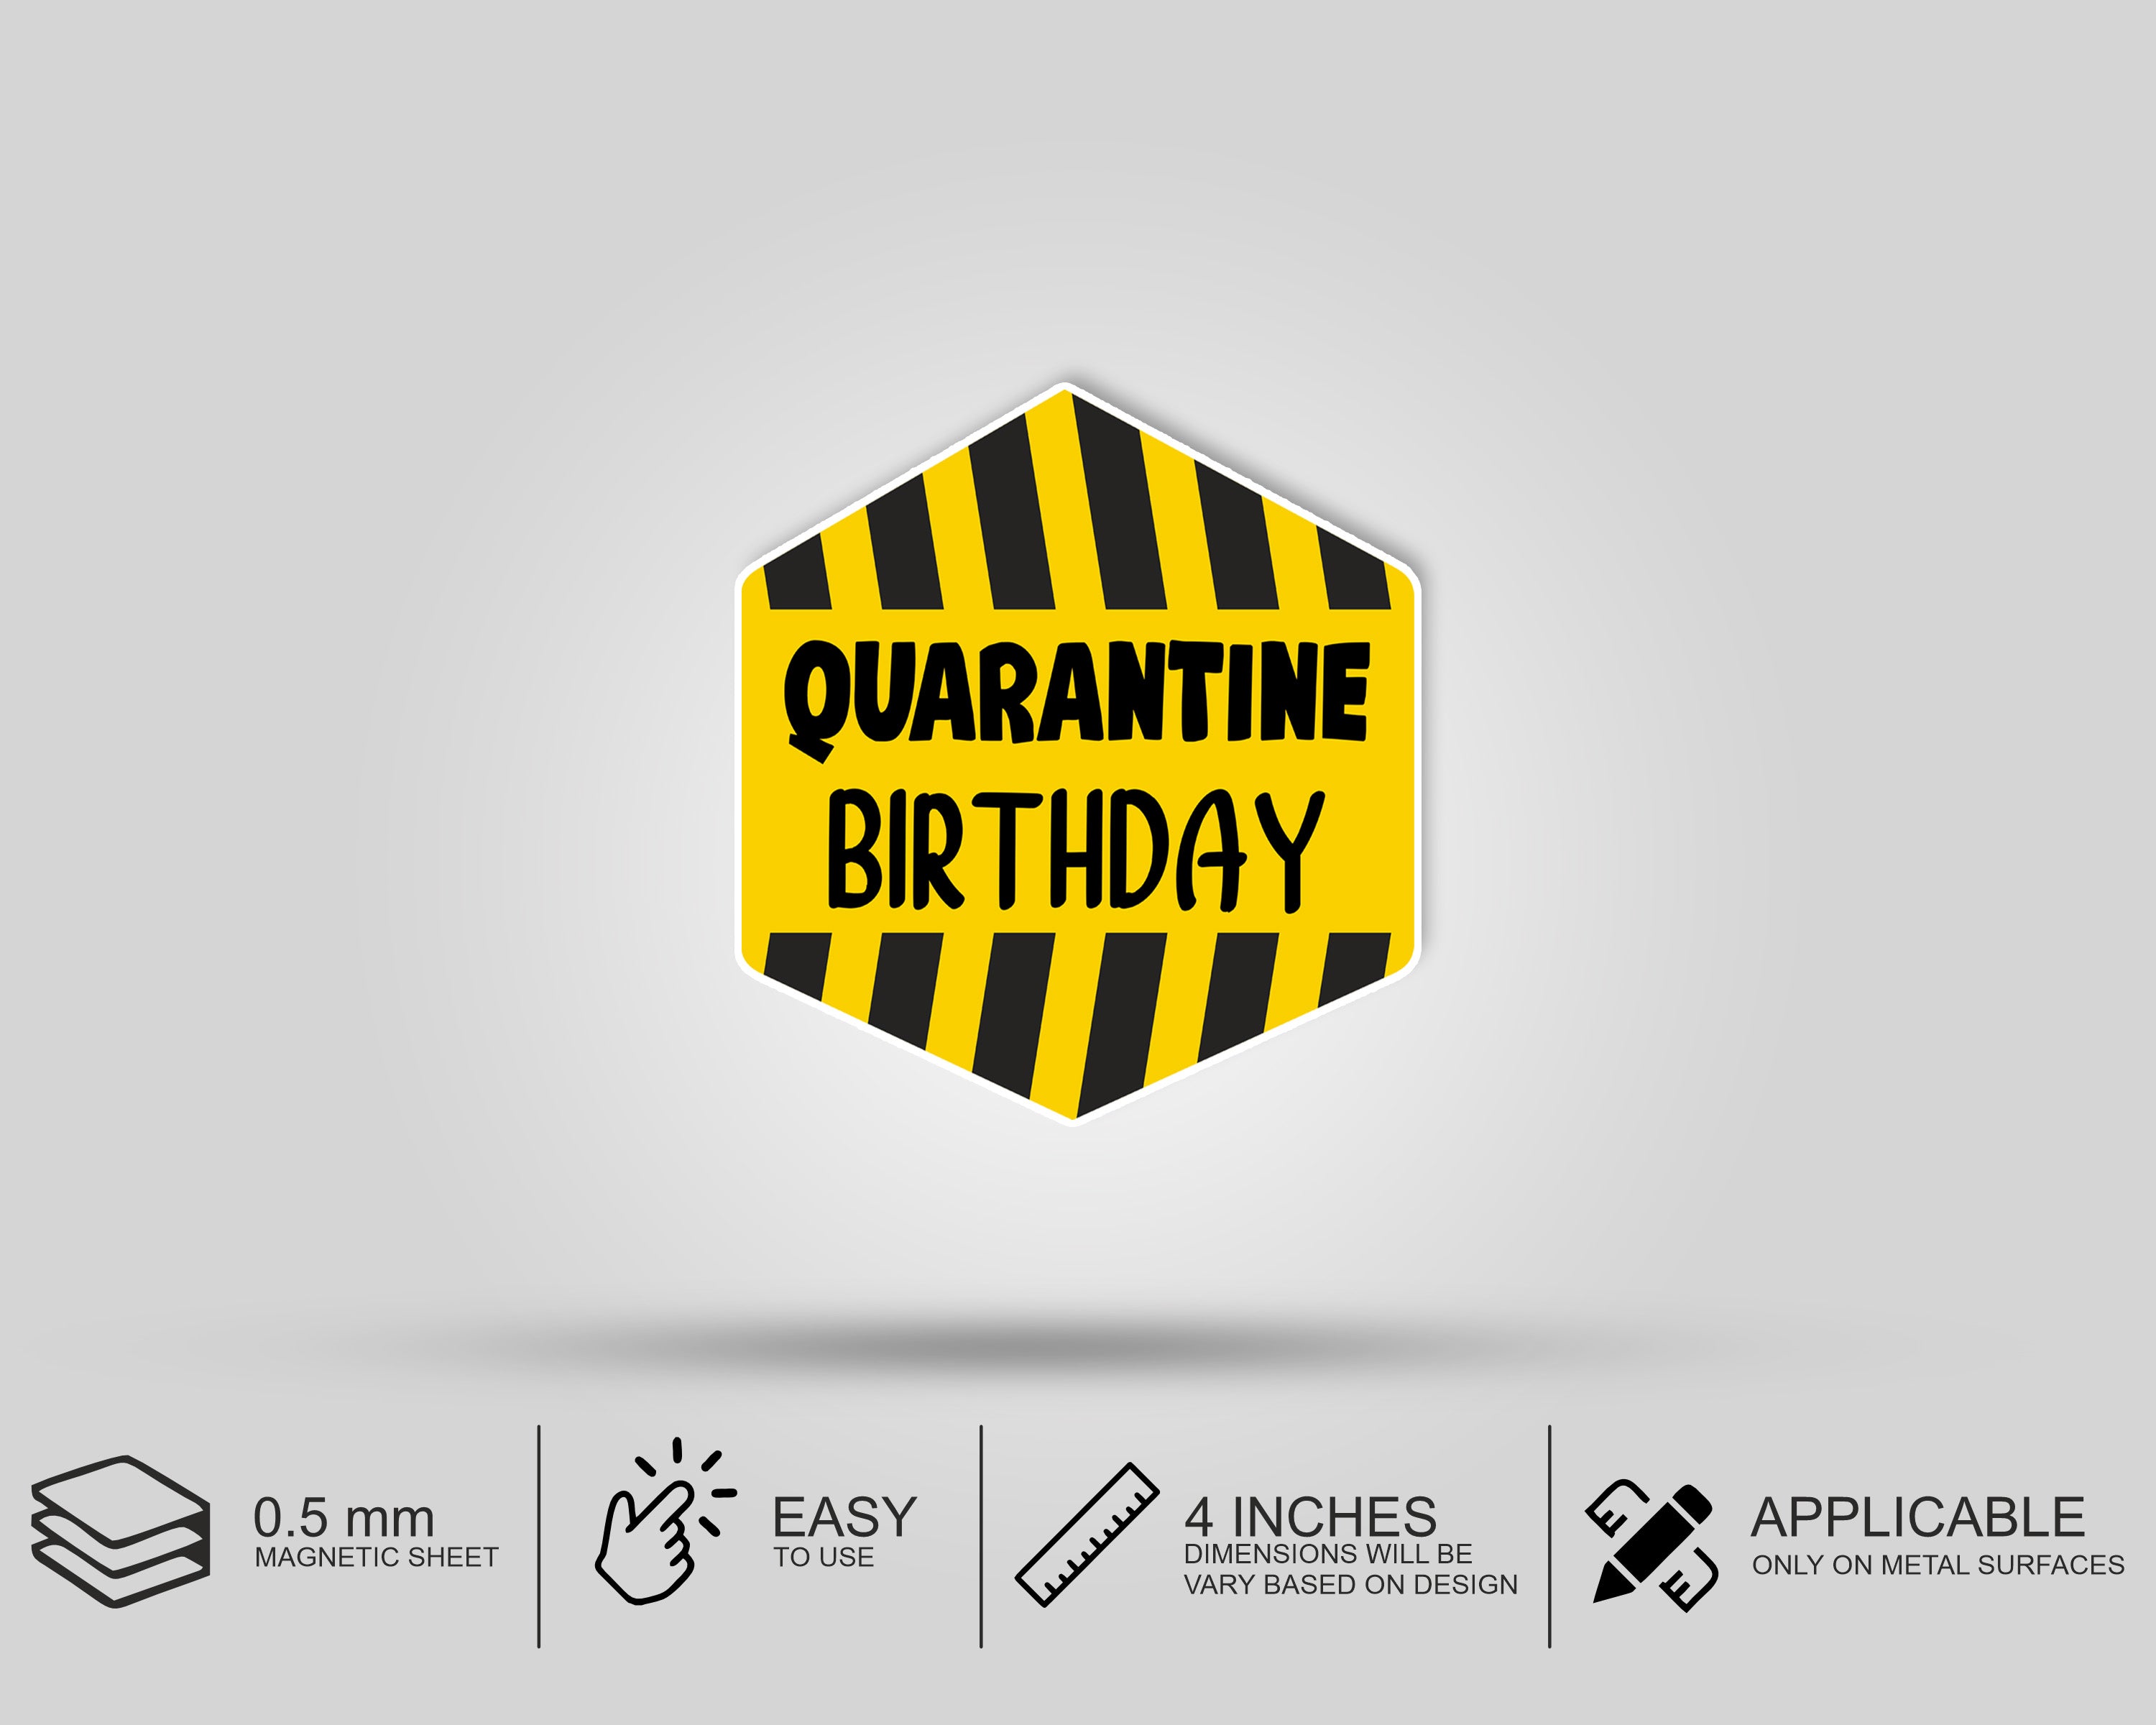 PSI Quarantine Theme Mini Magnetic Return Gift Pack